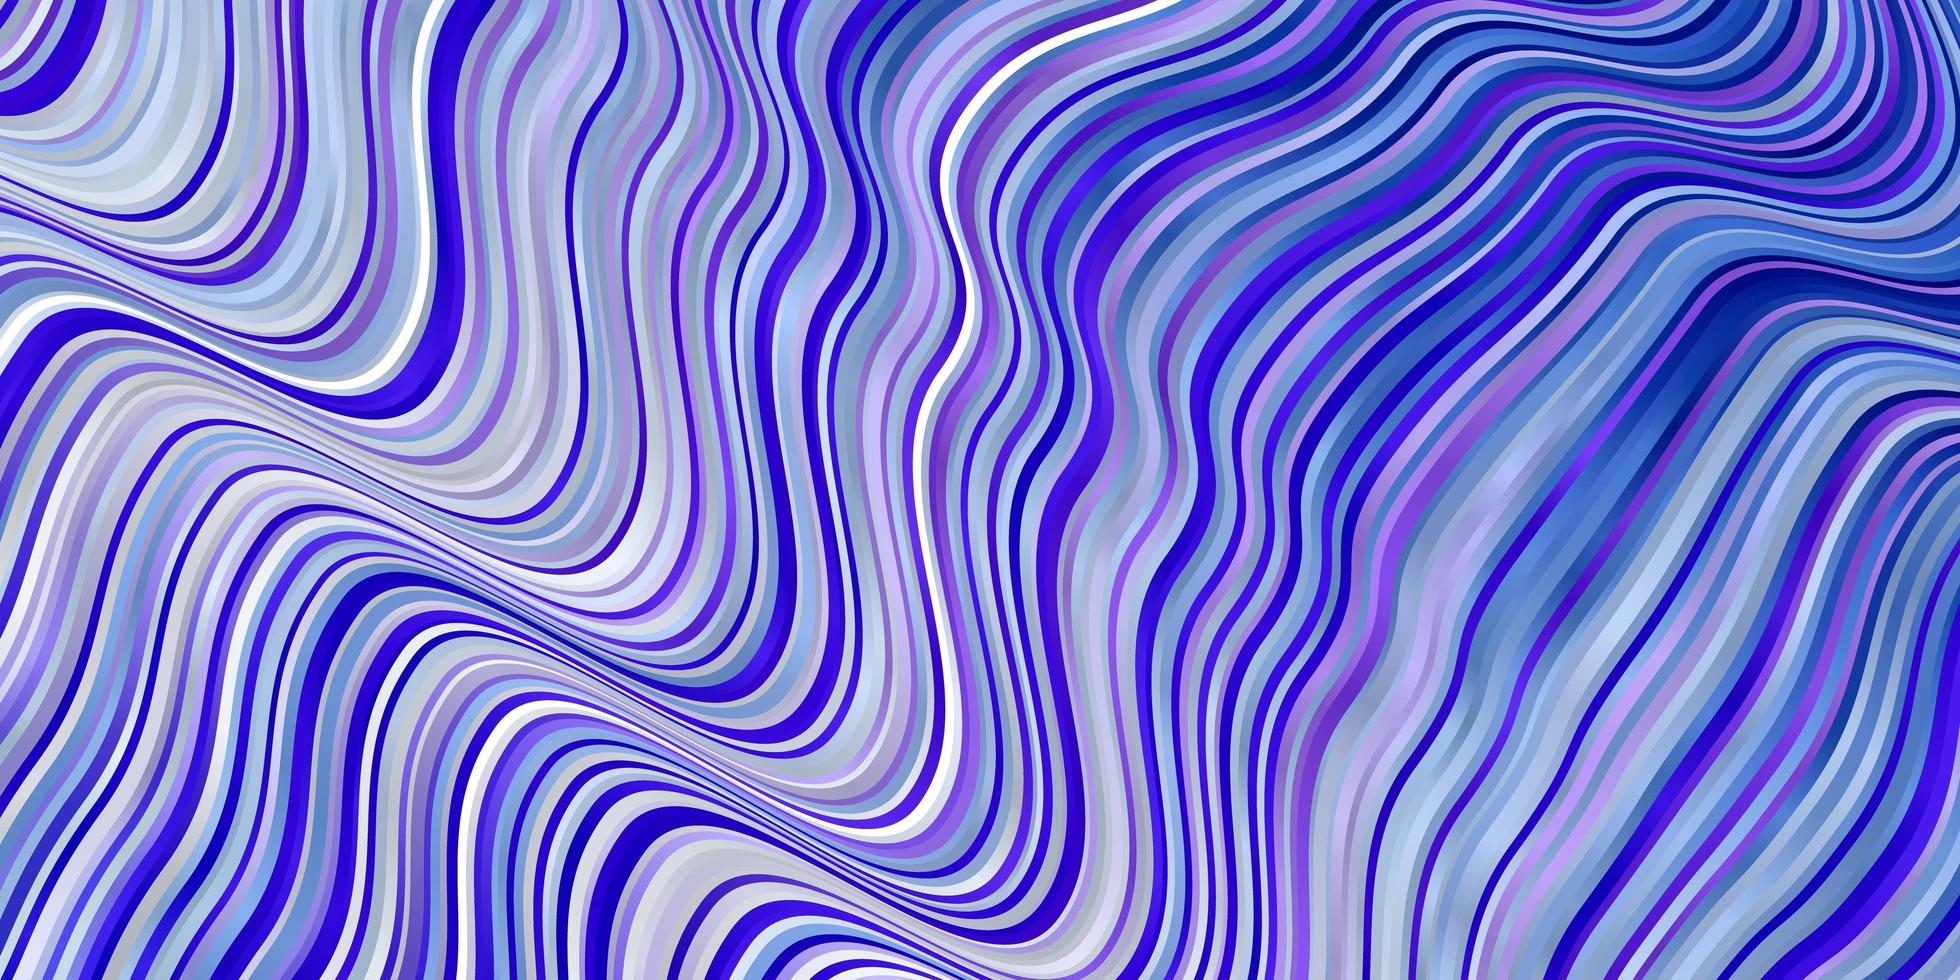 textura vetorial azul-rosa claro com curvas ilustração colorida com padrão de linhas curvas para anúncios comerciais vetor